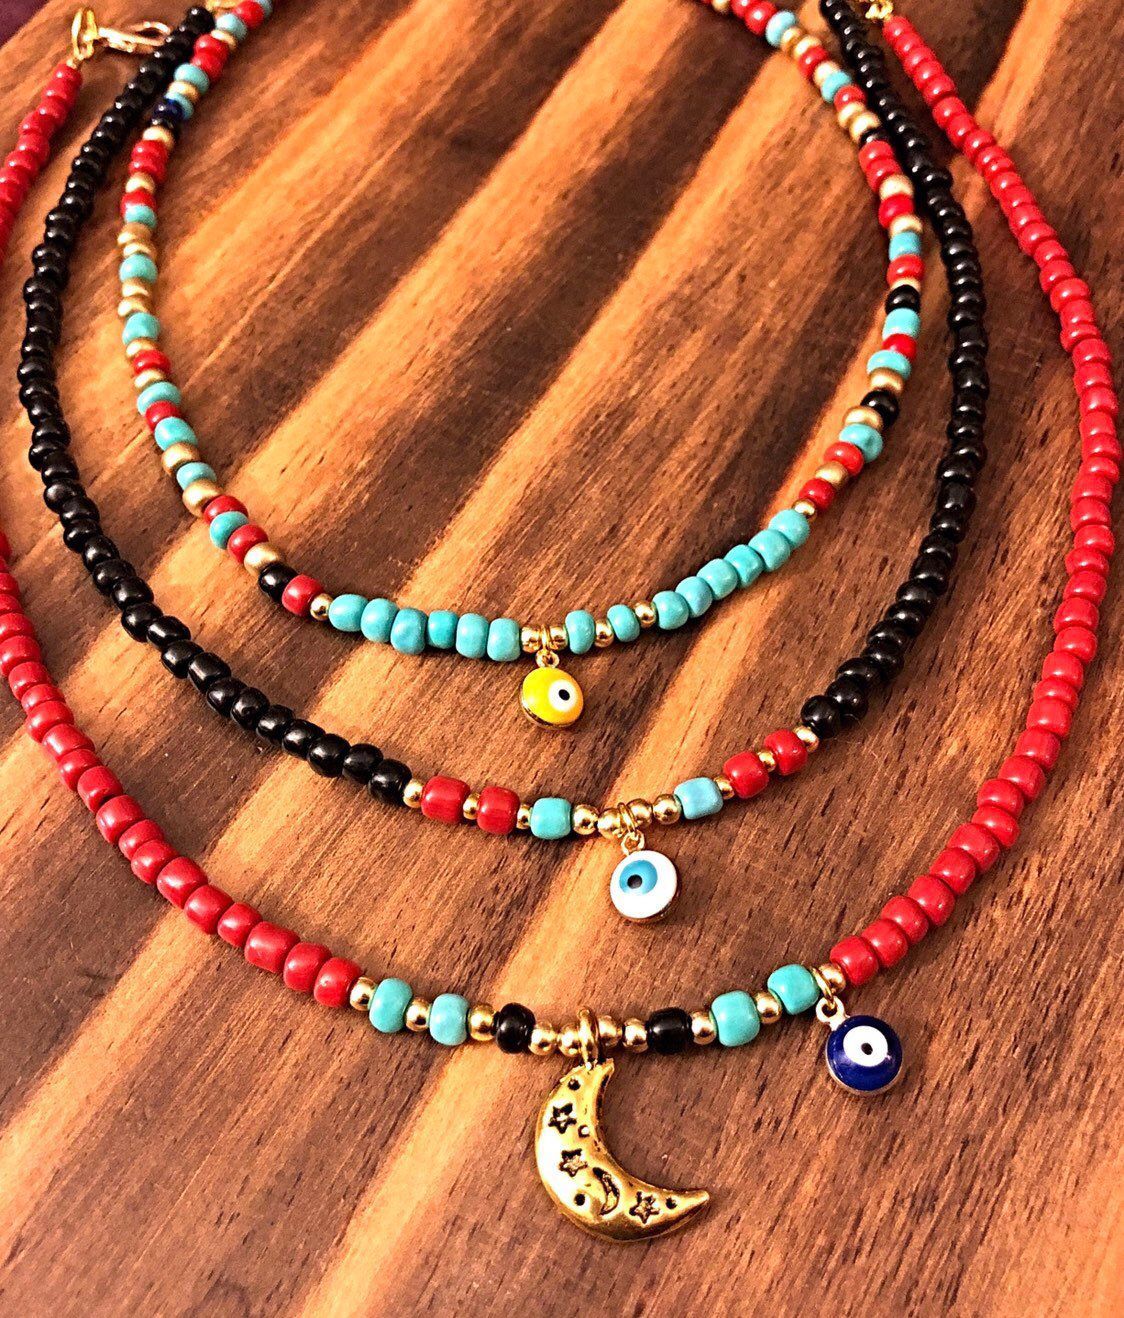 Gypsy choker with evil eye. bohemian jewelry hippie accessories tribal style tibet jewelry - Gypsy choker with evil eye. bohemian jewelry hippie accessories tribal style tibet jewelry -   16 diy Jewelry hippie ideas